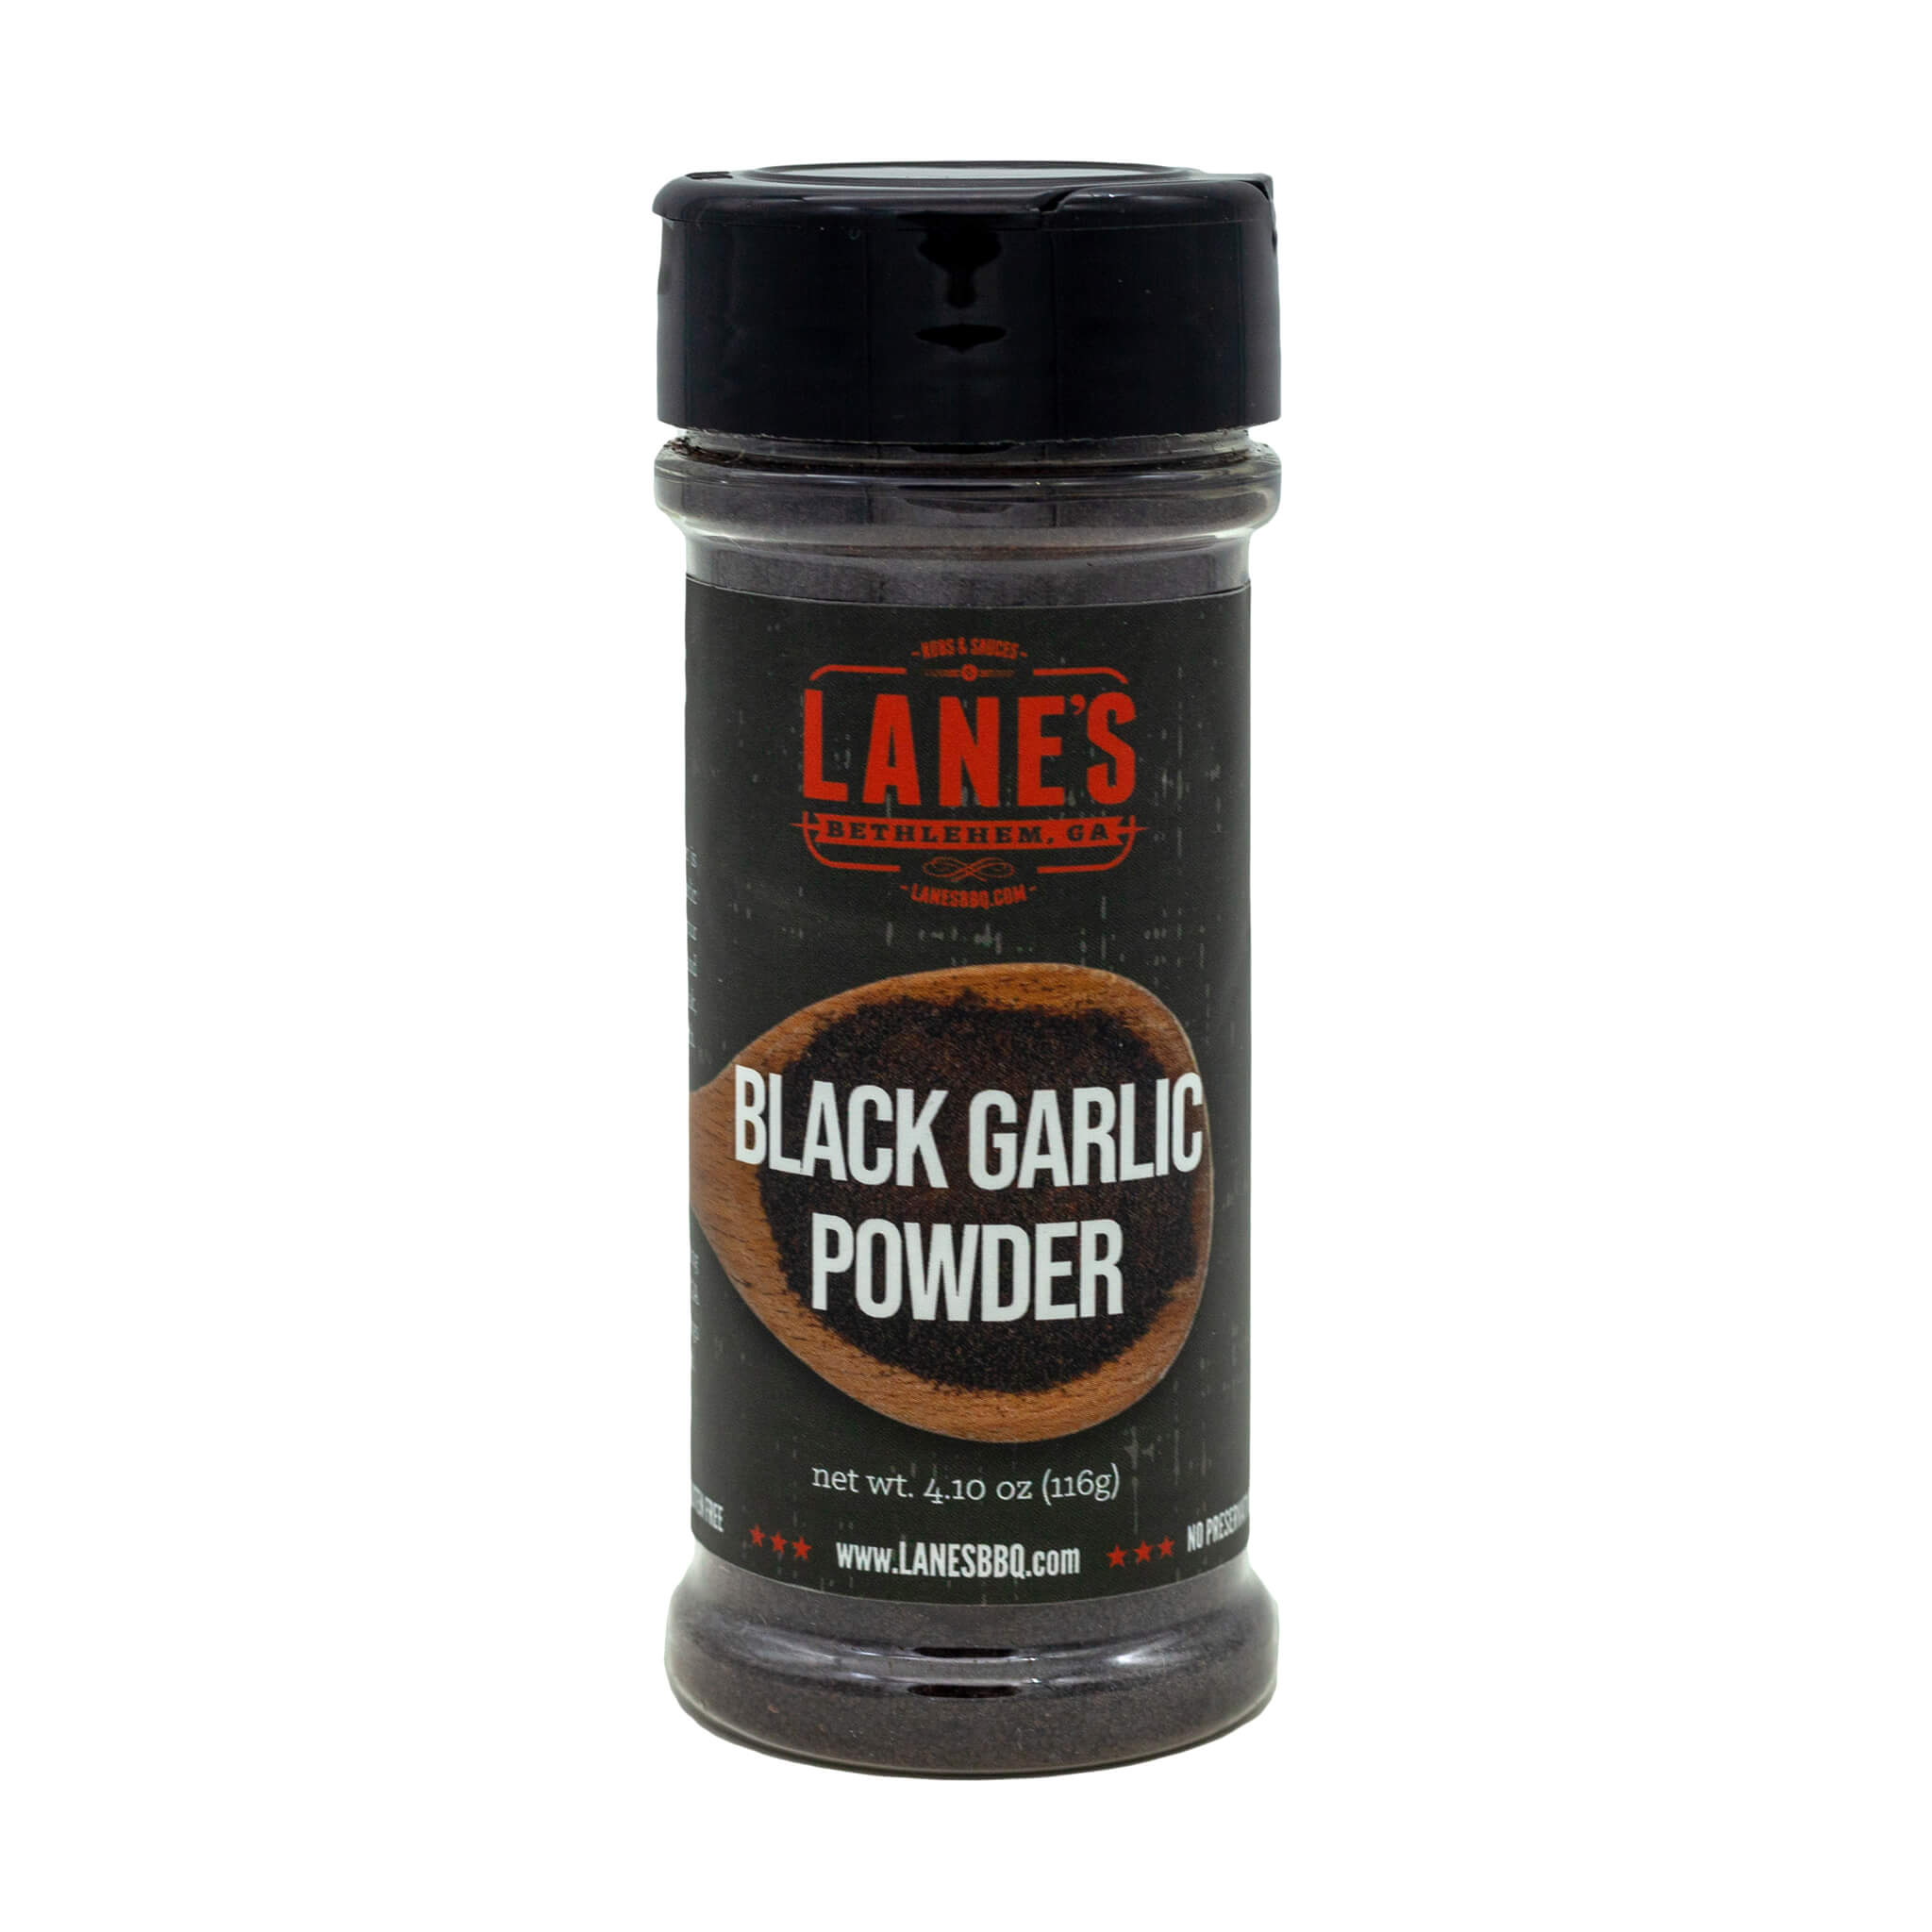 http://lanesbbq.com/cdn/shop/products/black-garlic-powder.jpg?v=1676564513&width=2048